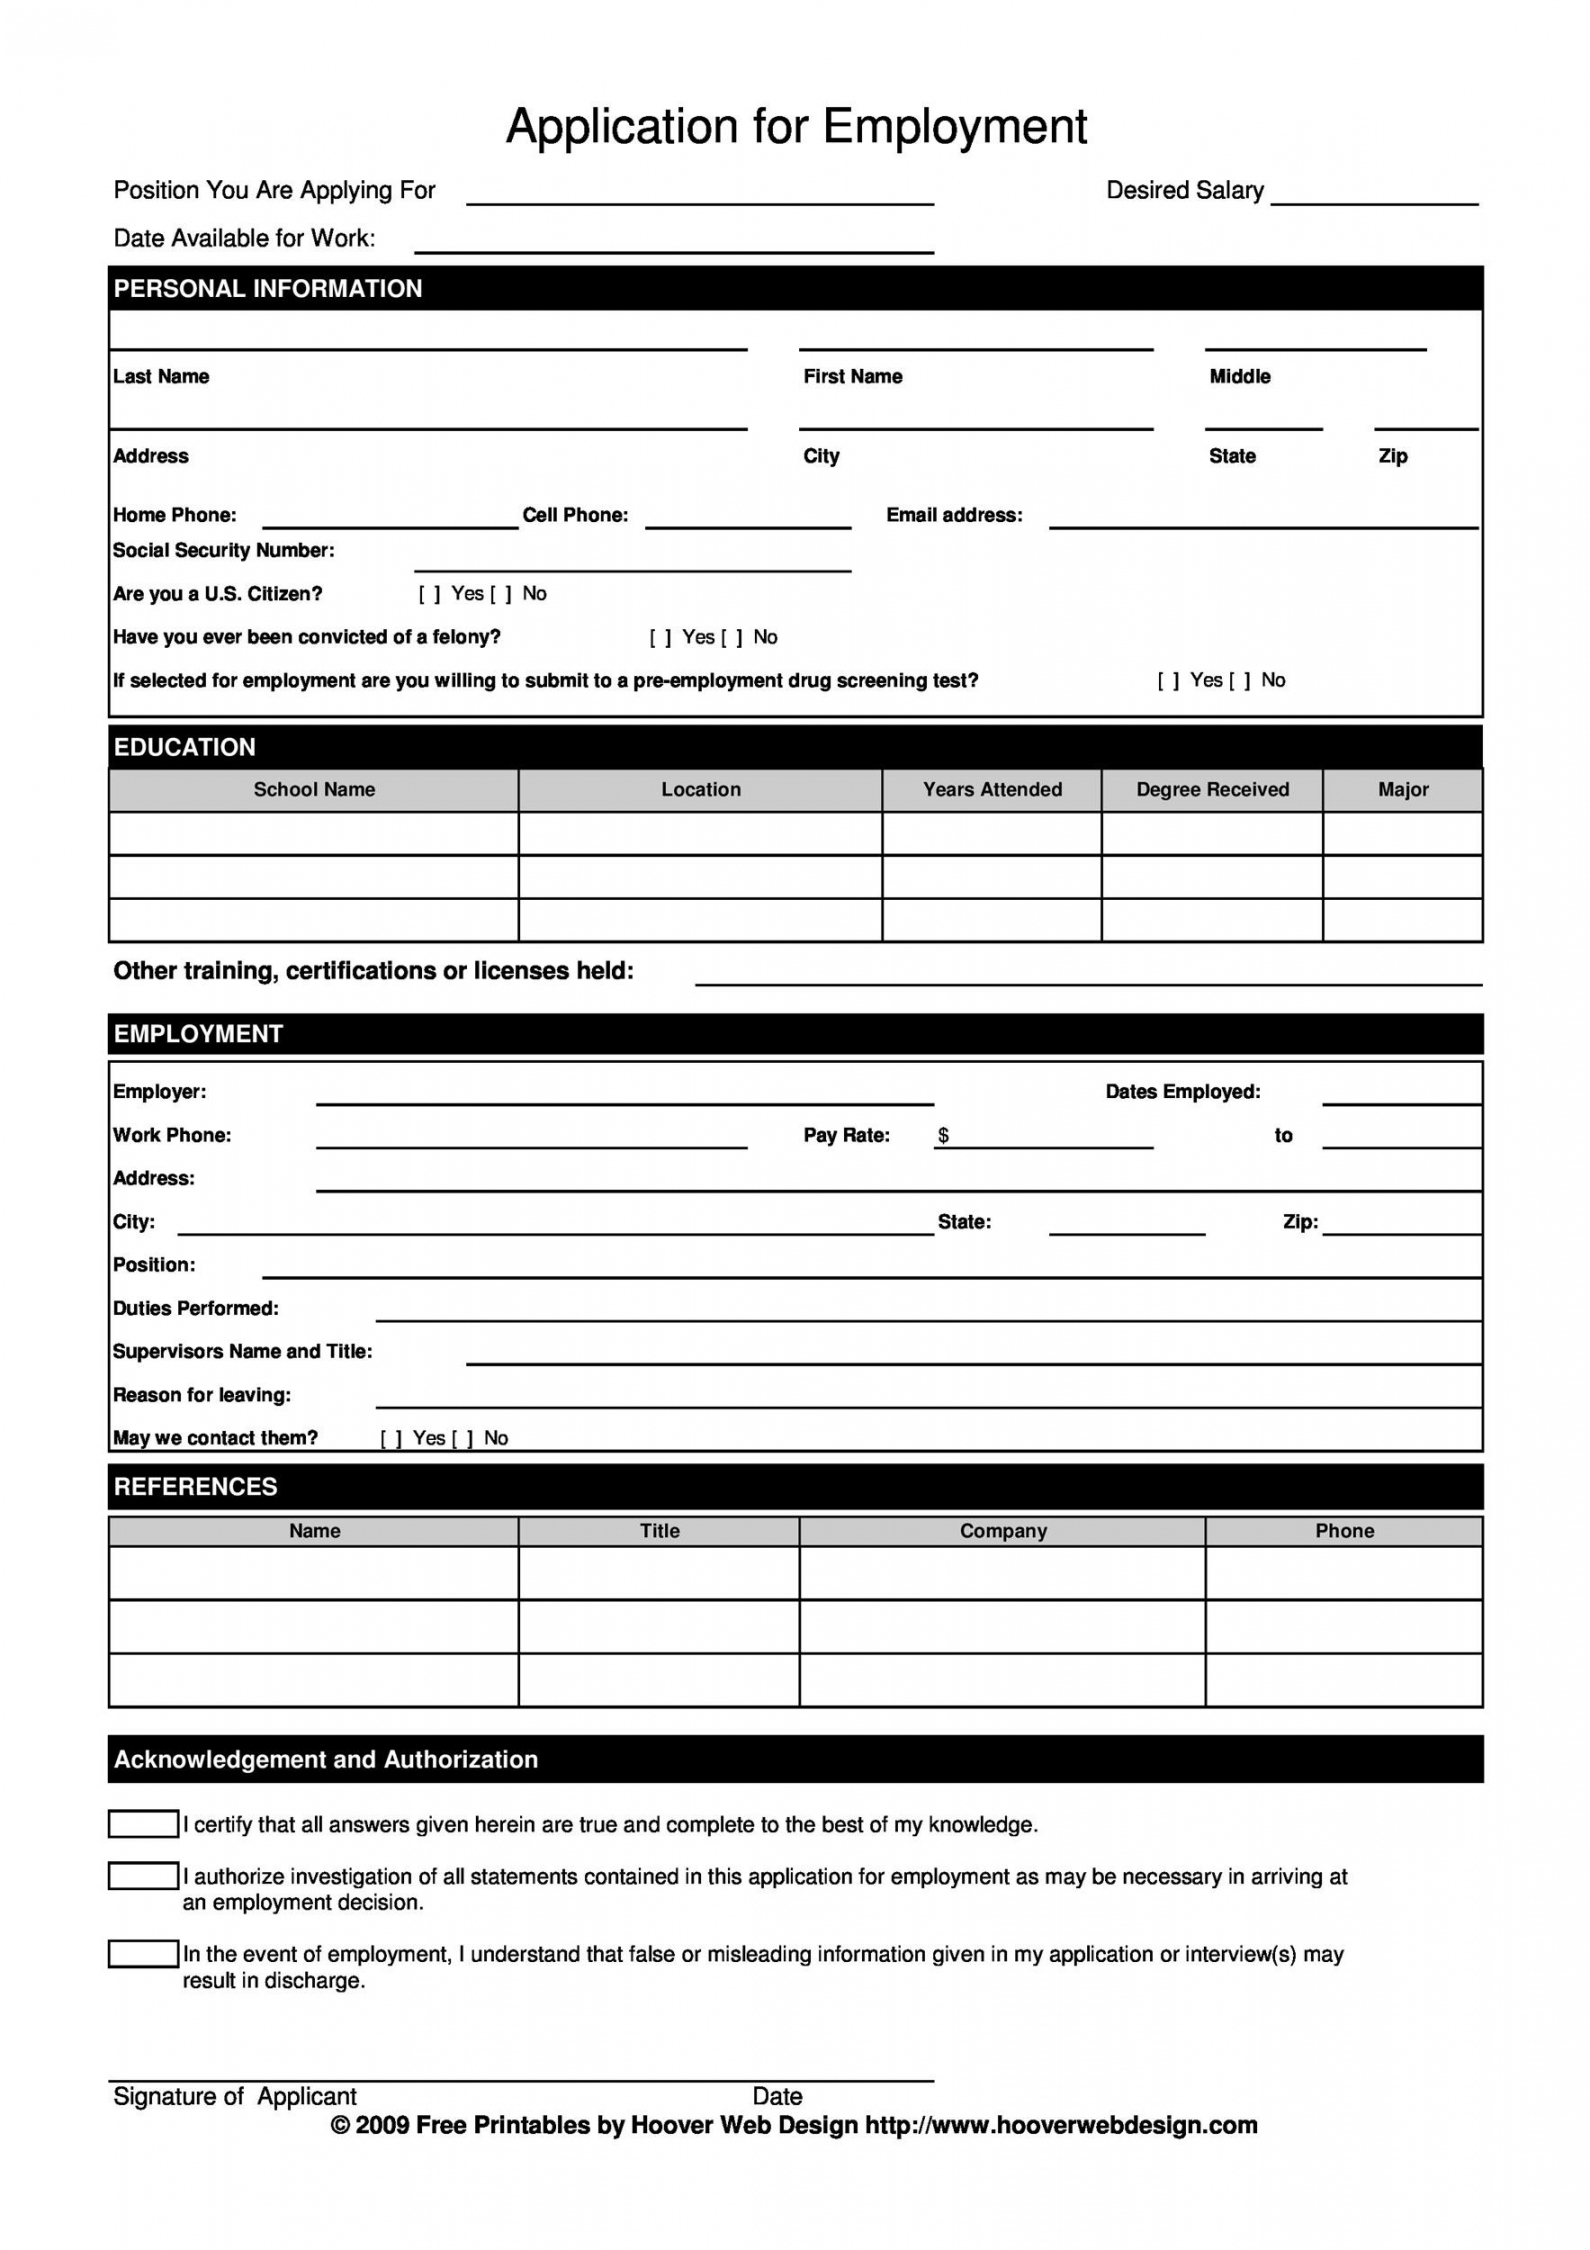 Free Printable Job Application Form - Printable -  Free Employment / Job Application Form Templates [Printable] ᐅ